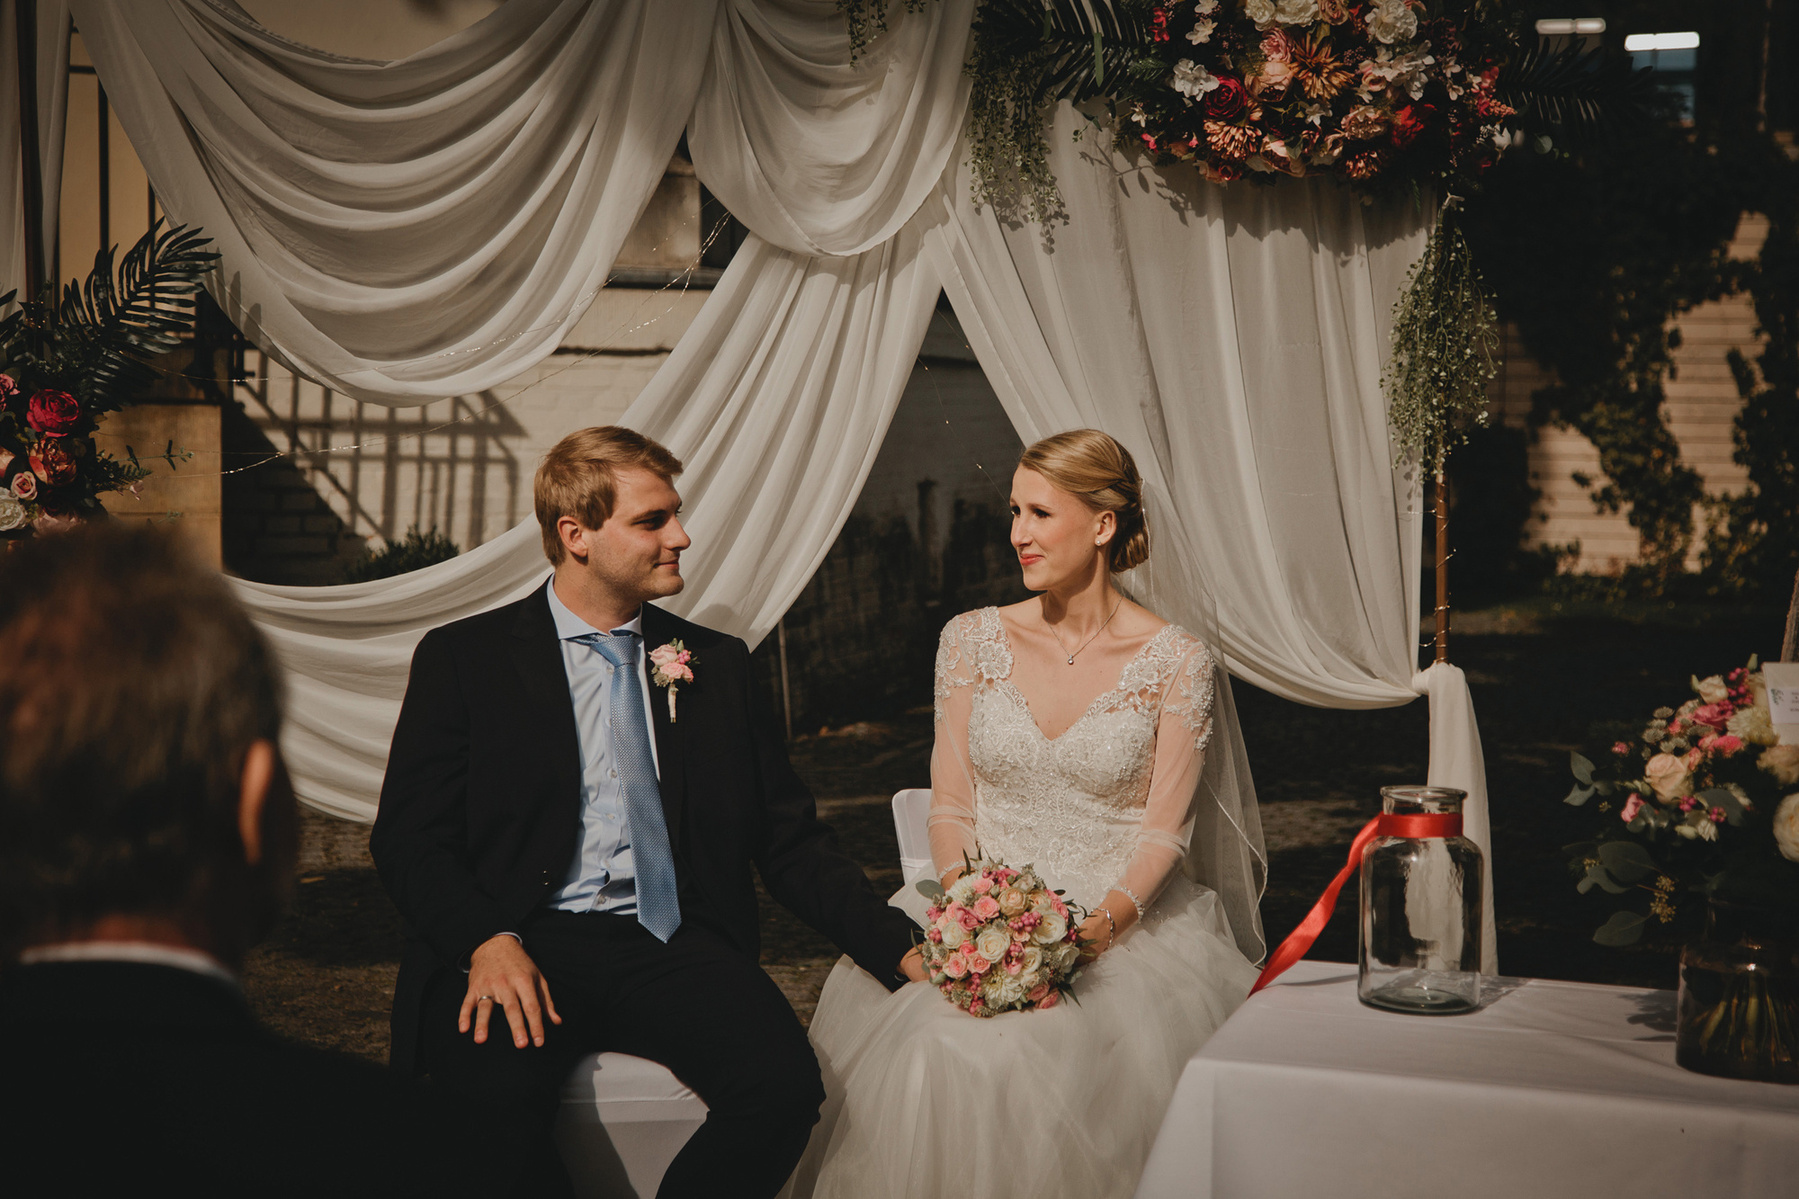 Ein berührender Moment zwischen Braut und Bräutigam während der Trauung in Berlin, eingefangen von der Hochzeitsfotografin Borkh Photography.